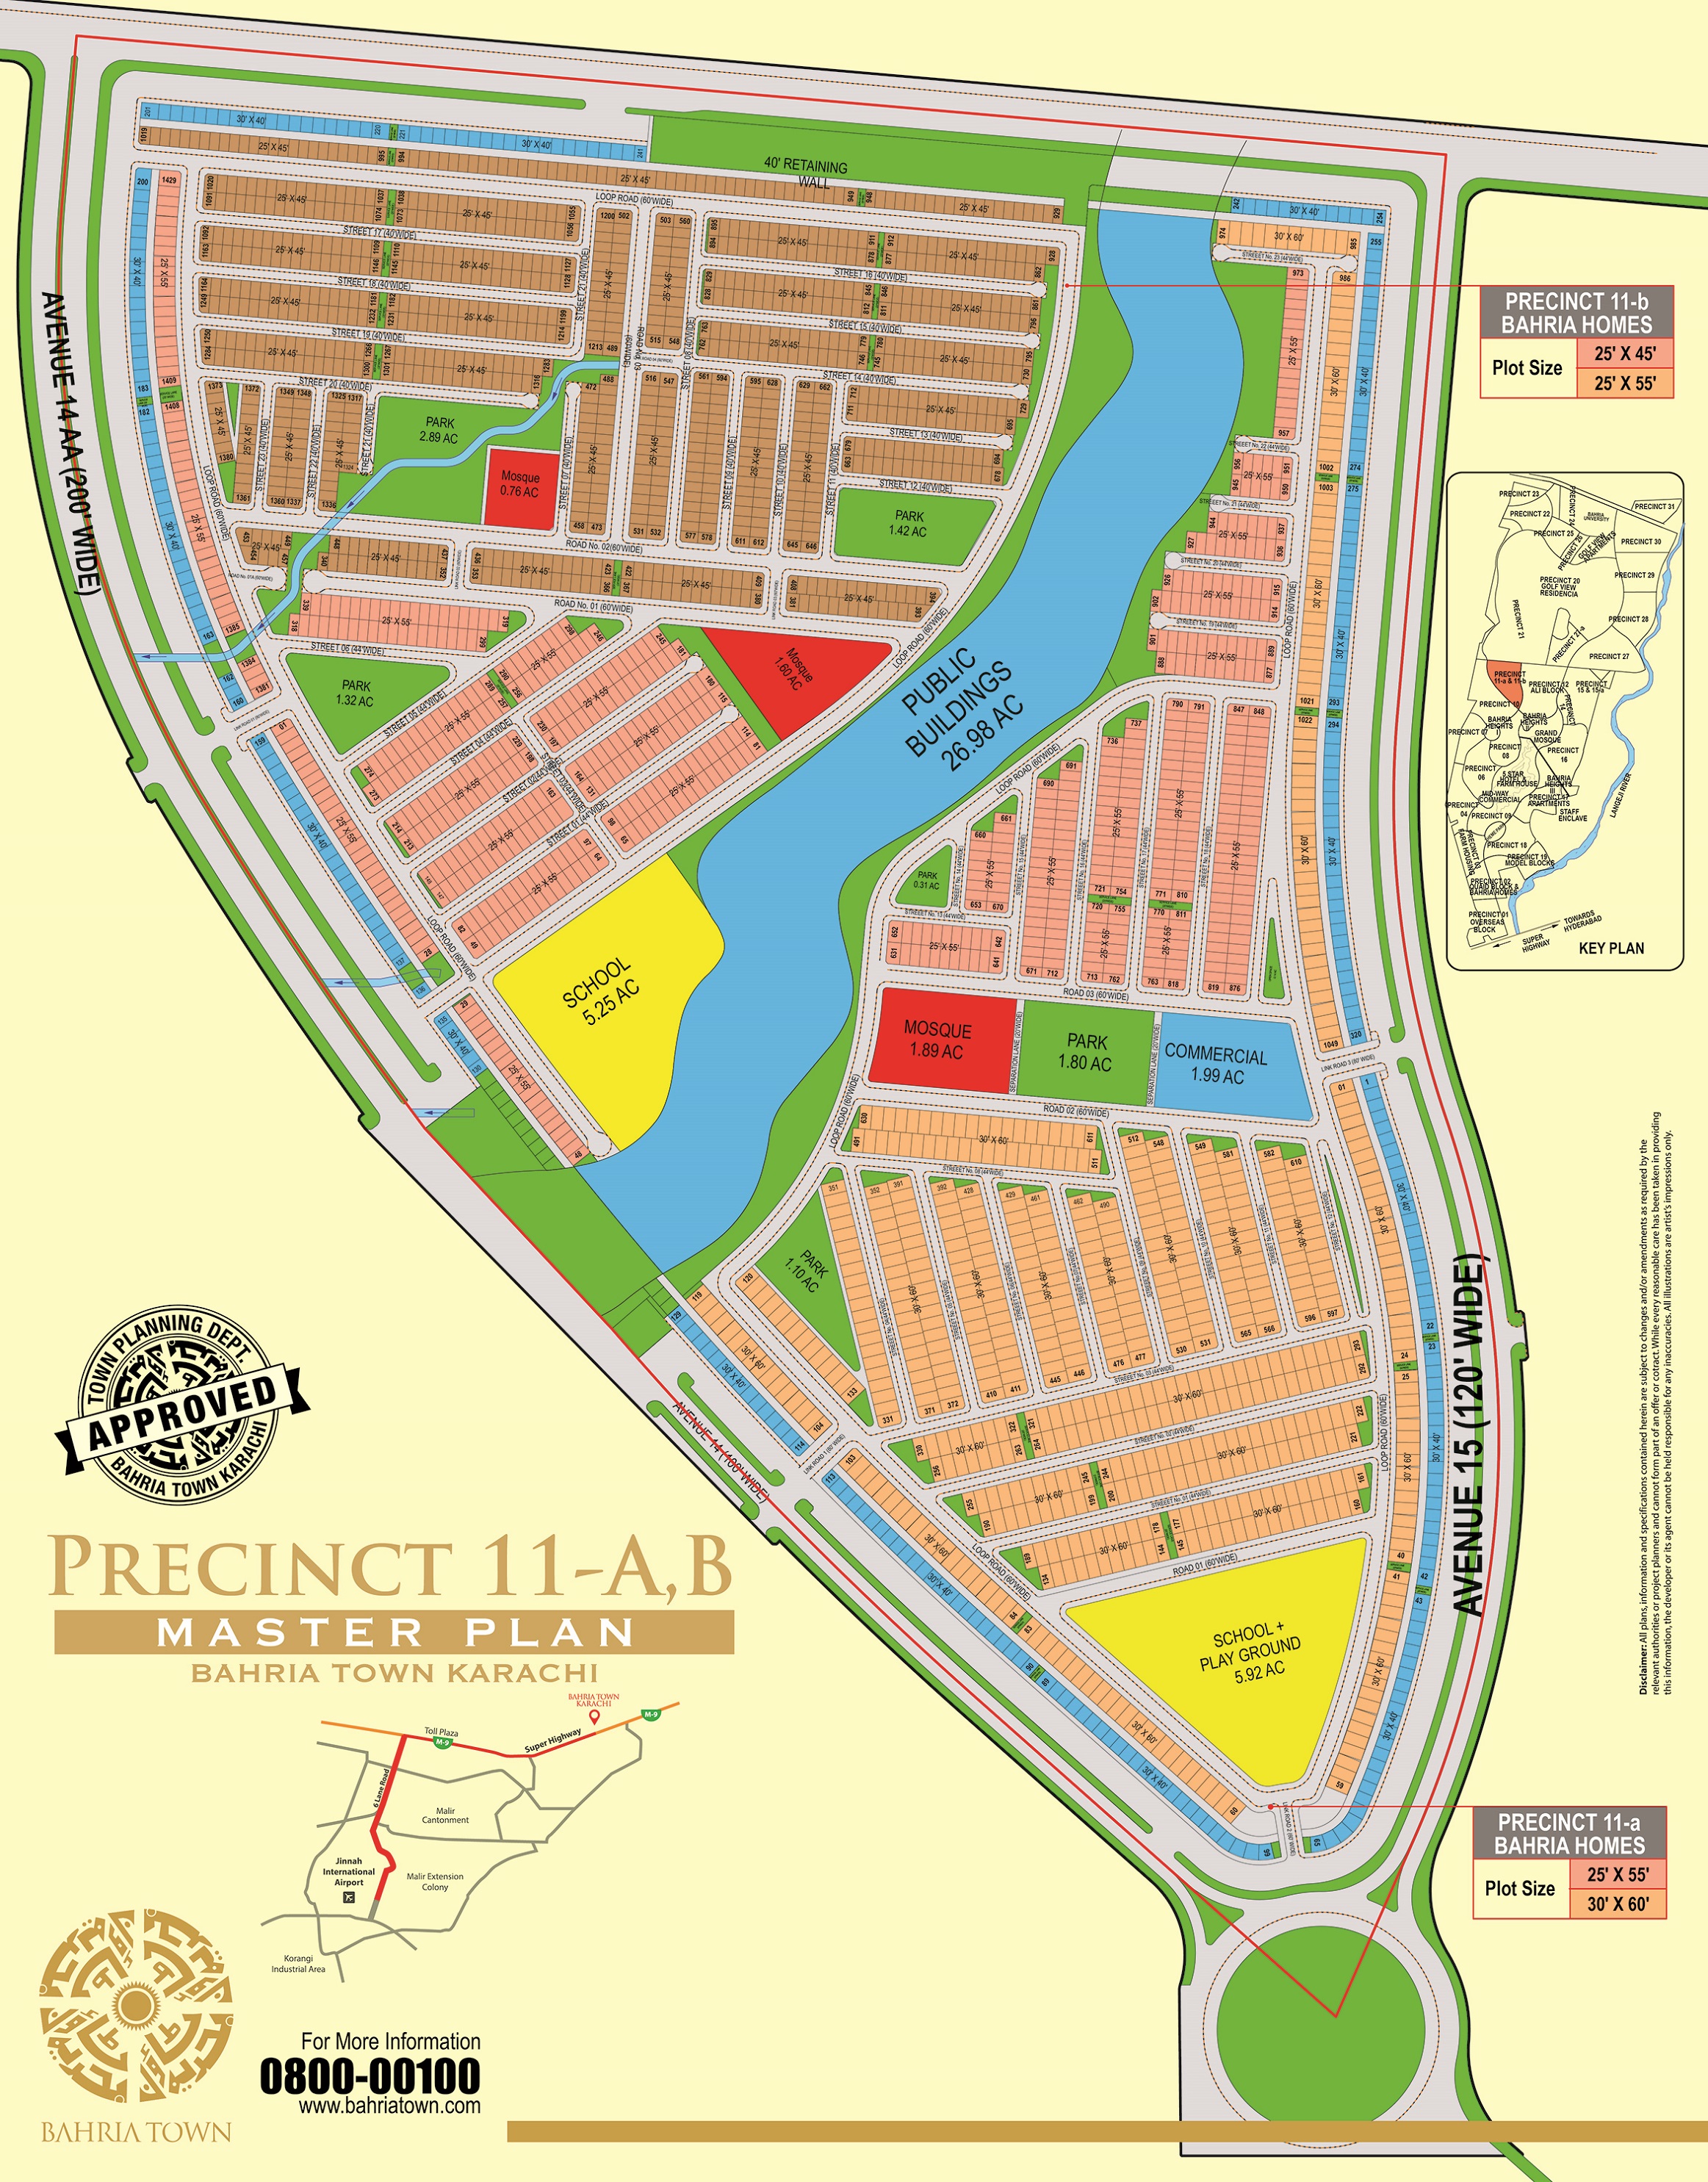 Precinct 11